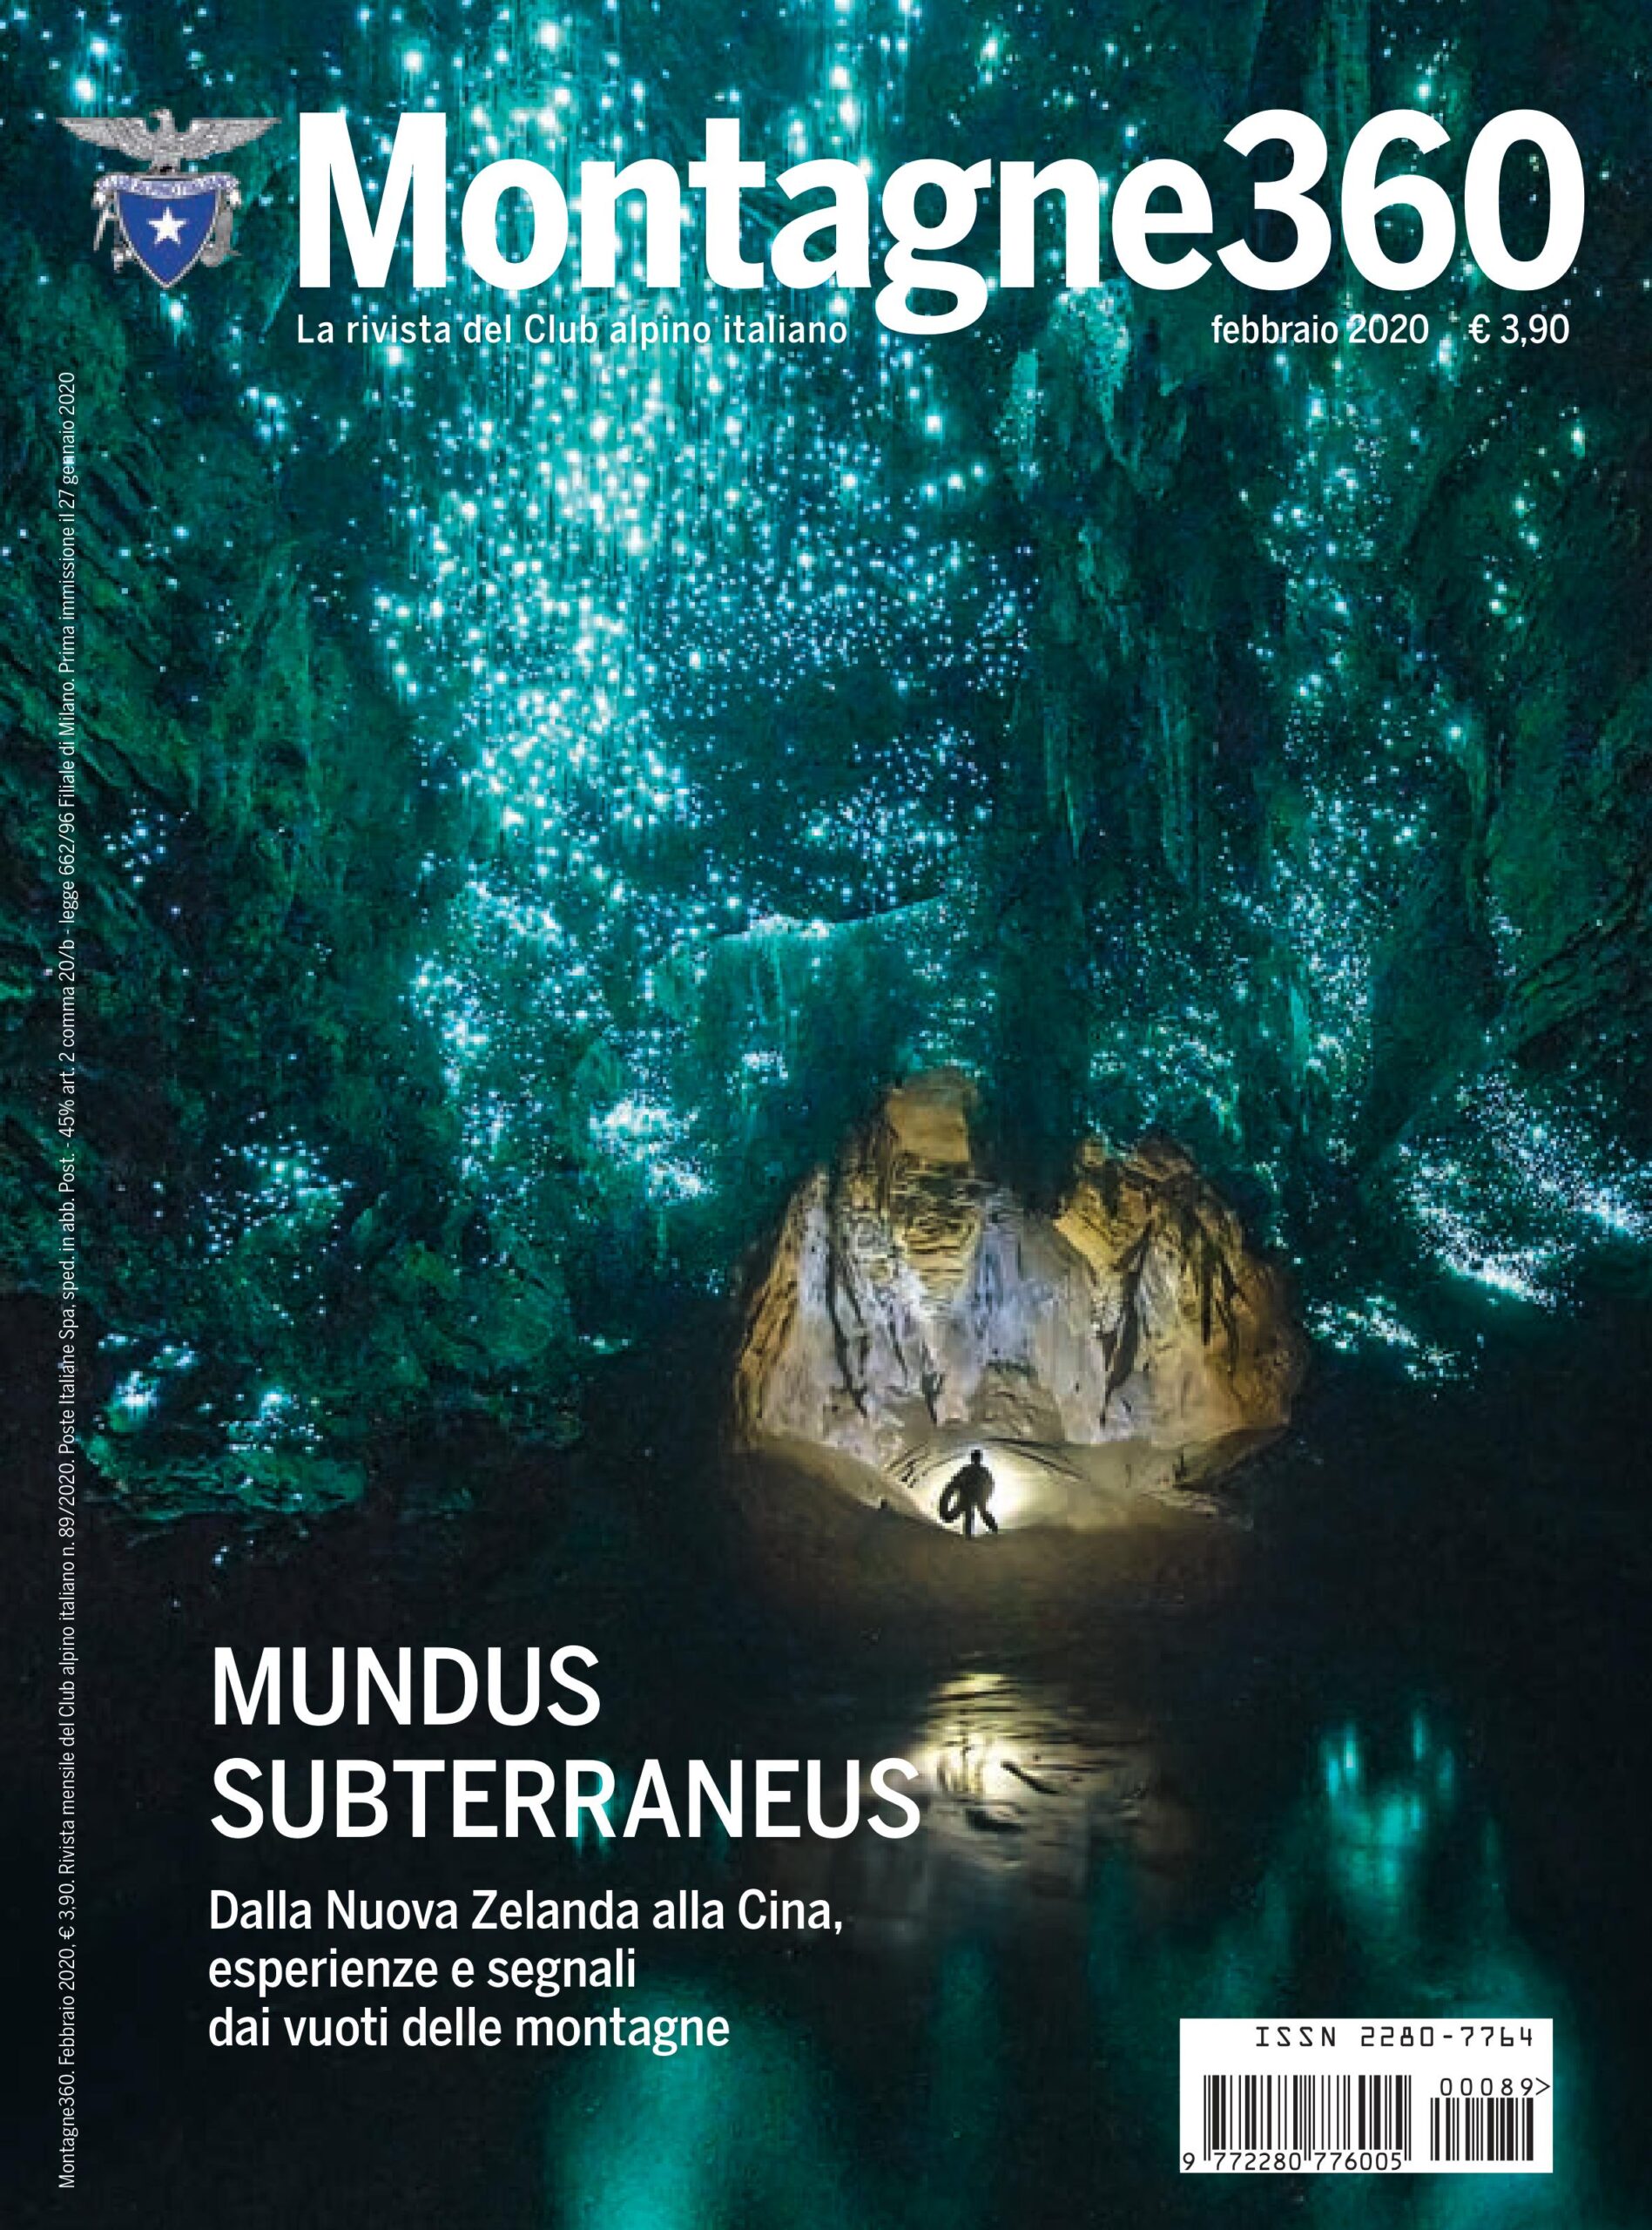 ‘Mundus subterraneus’: dalla Nuova Zelanda alla Cina esperienze e segnali dai vuoti delle montagne